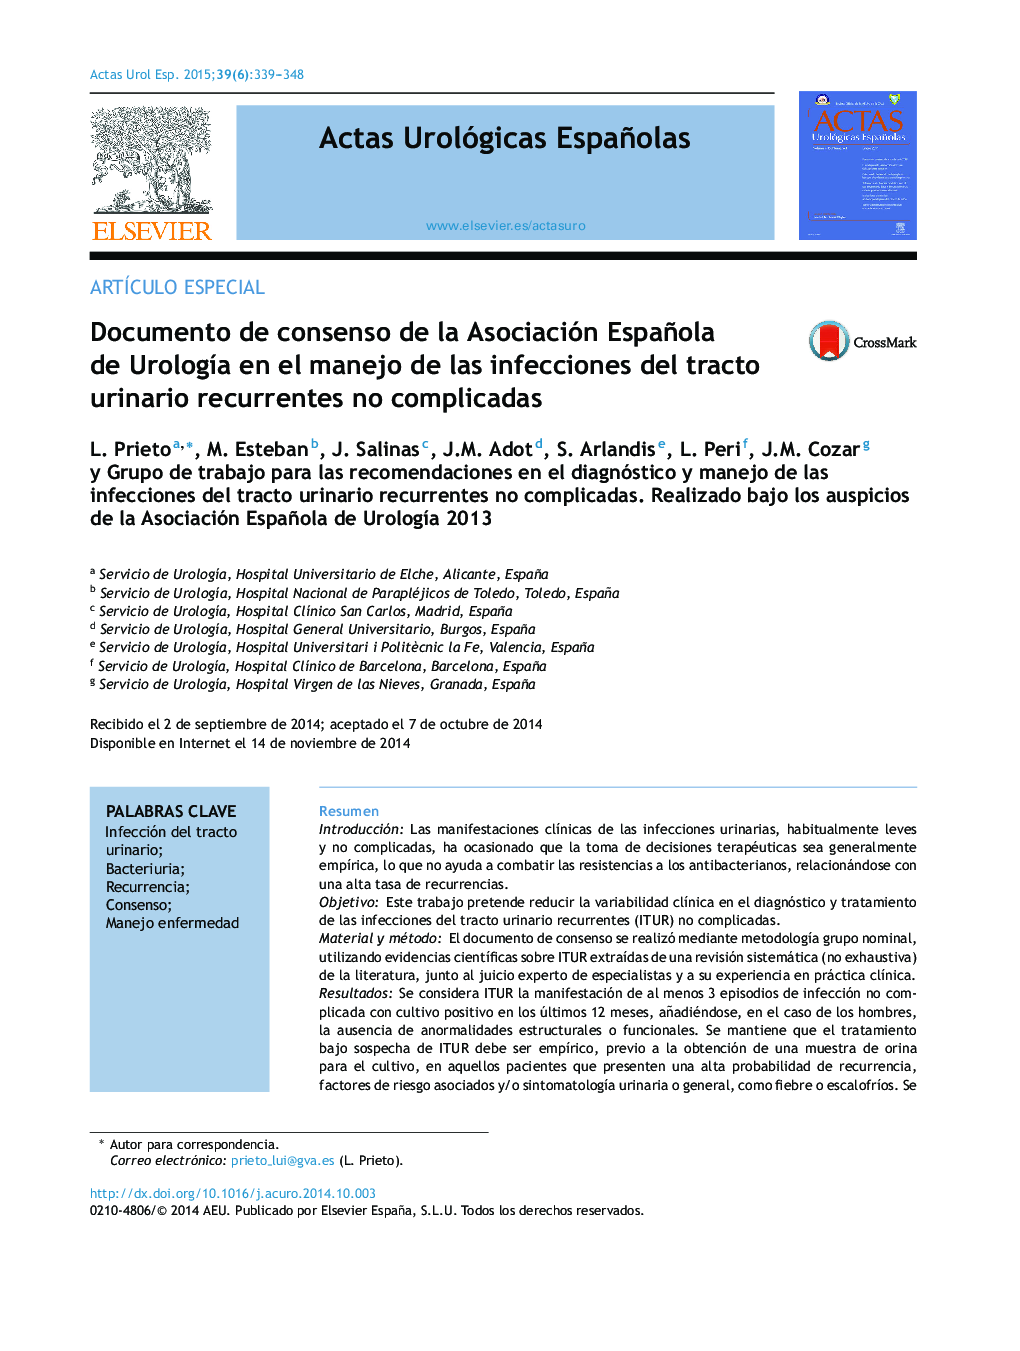 Documento de consenso de la Asociación Española de Urología en el manejo de las infecciones del tracto urinario recurrentes no complicadas